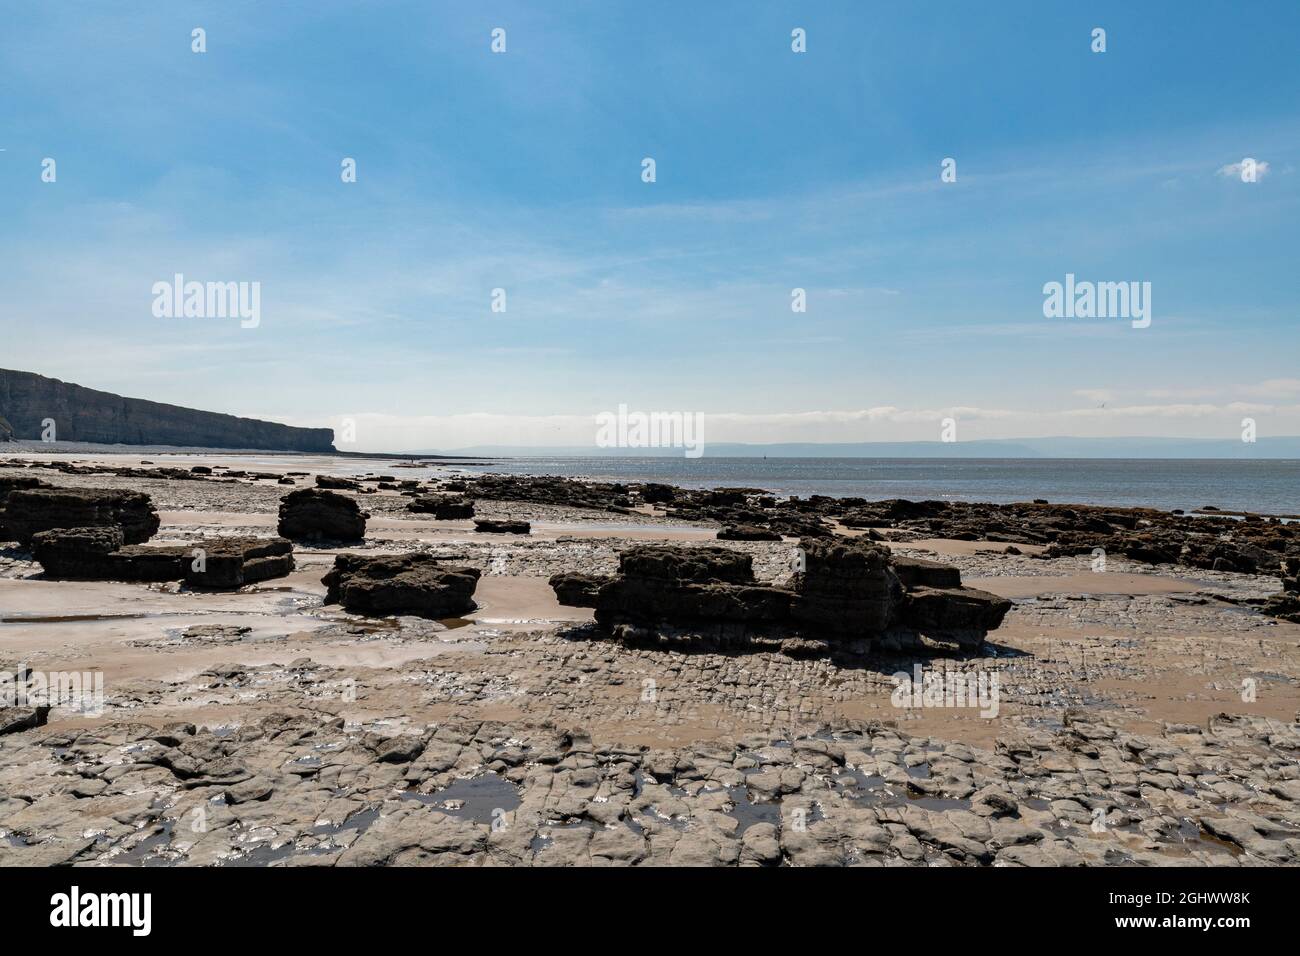 Eine Küstenlandschaft mit riesigen Felsplatten am walisischen Strand, der sich auf die ikonische Klippe am nash Point zurückgeht Stockfoto